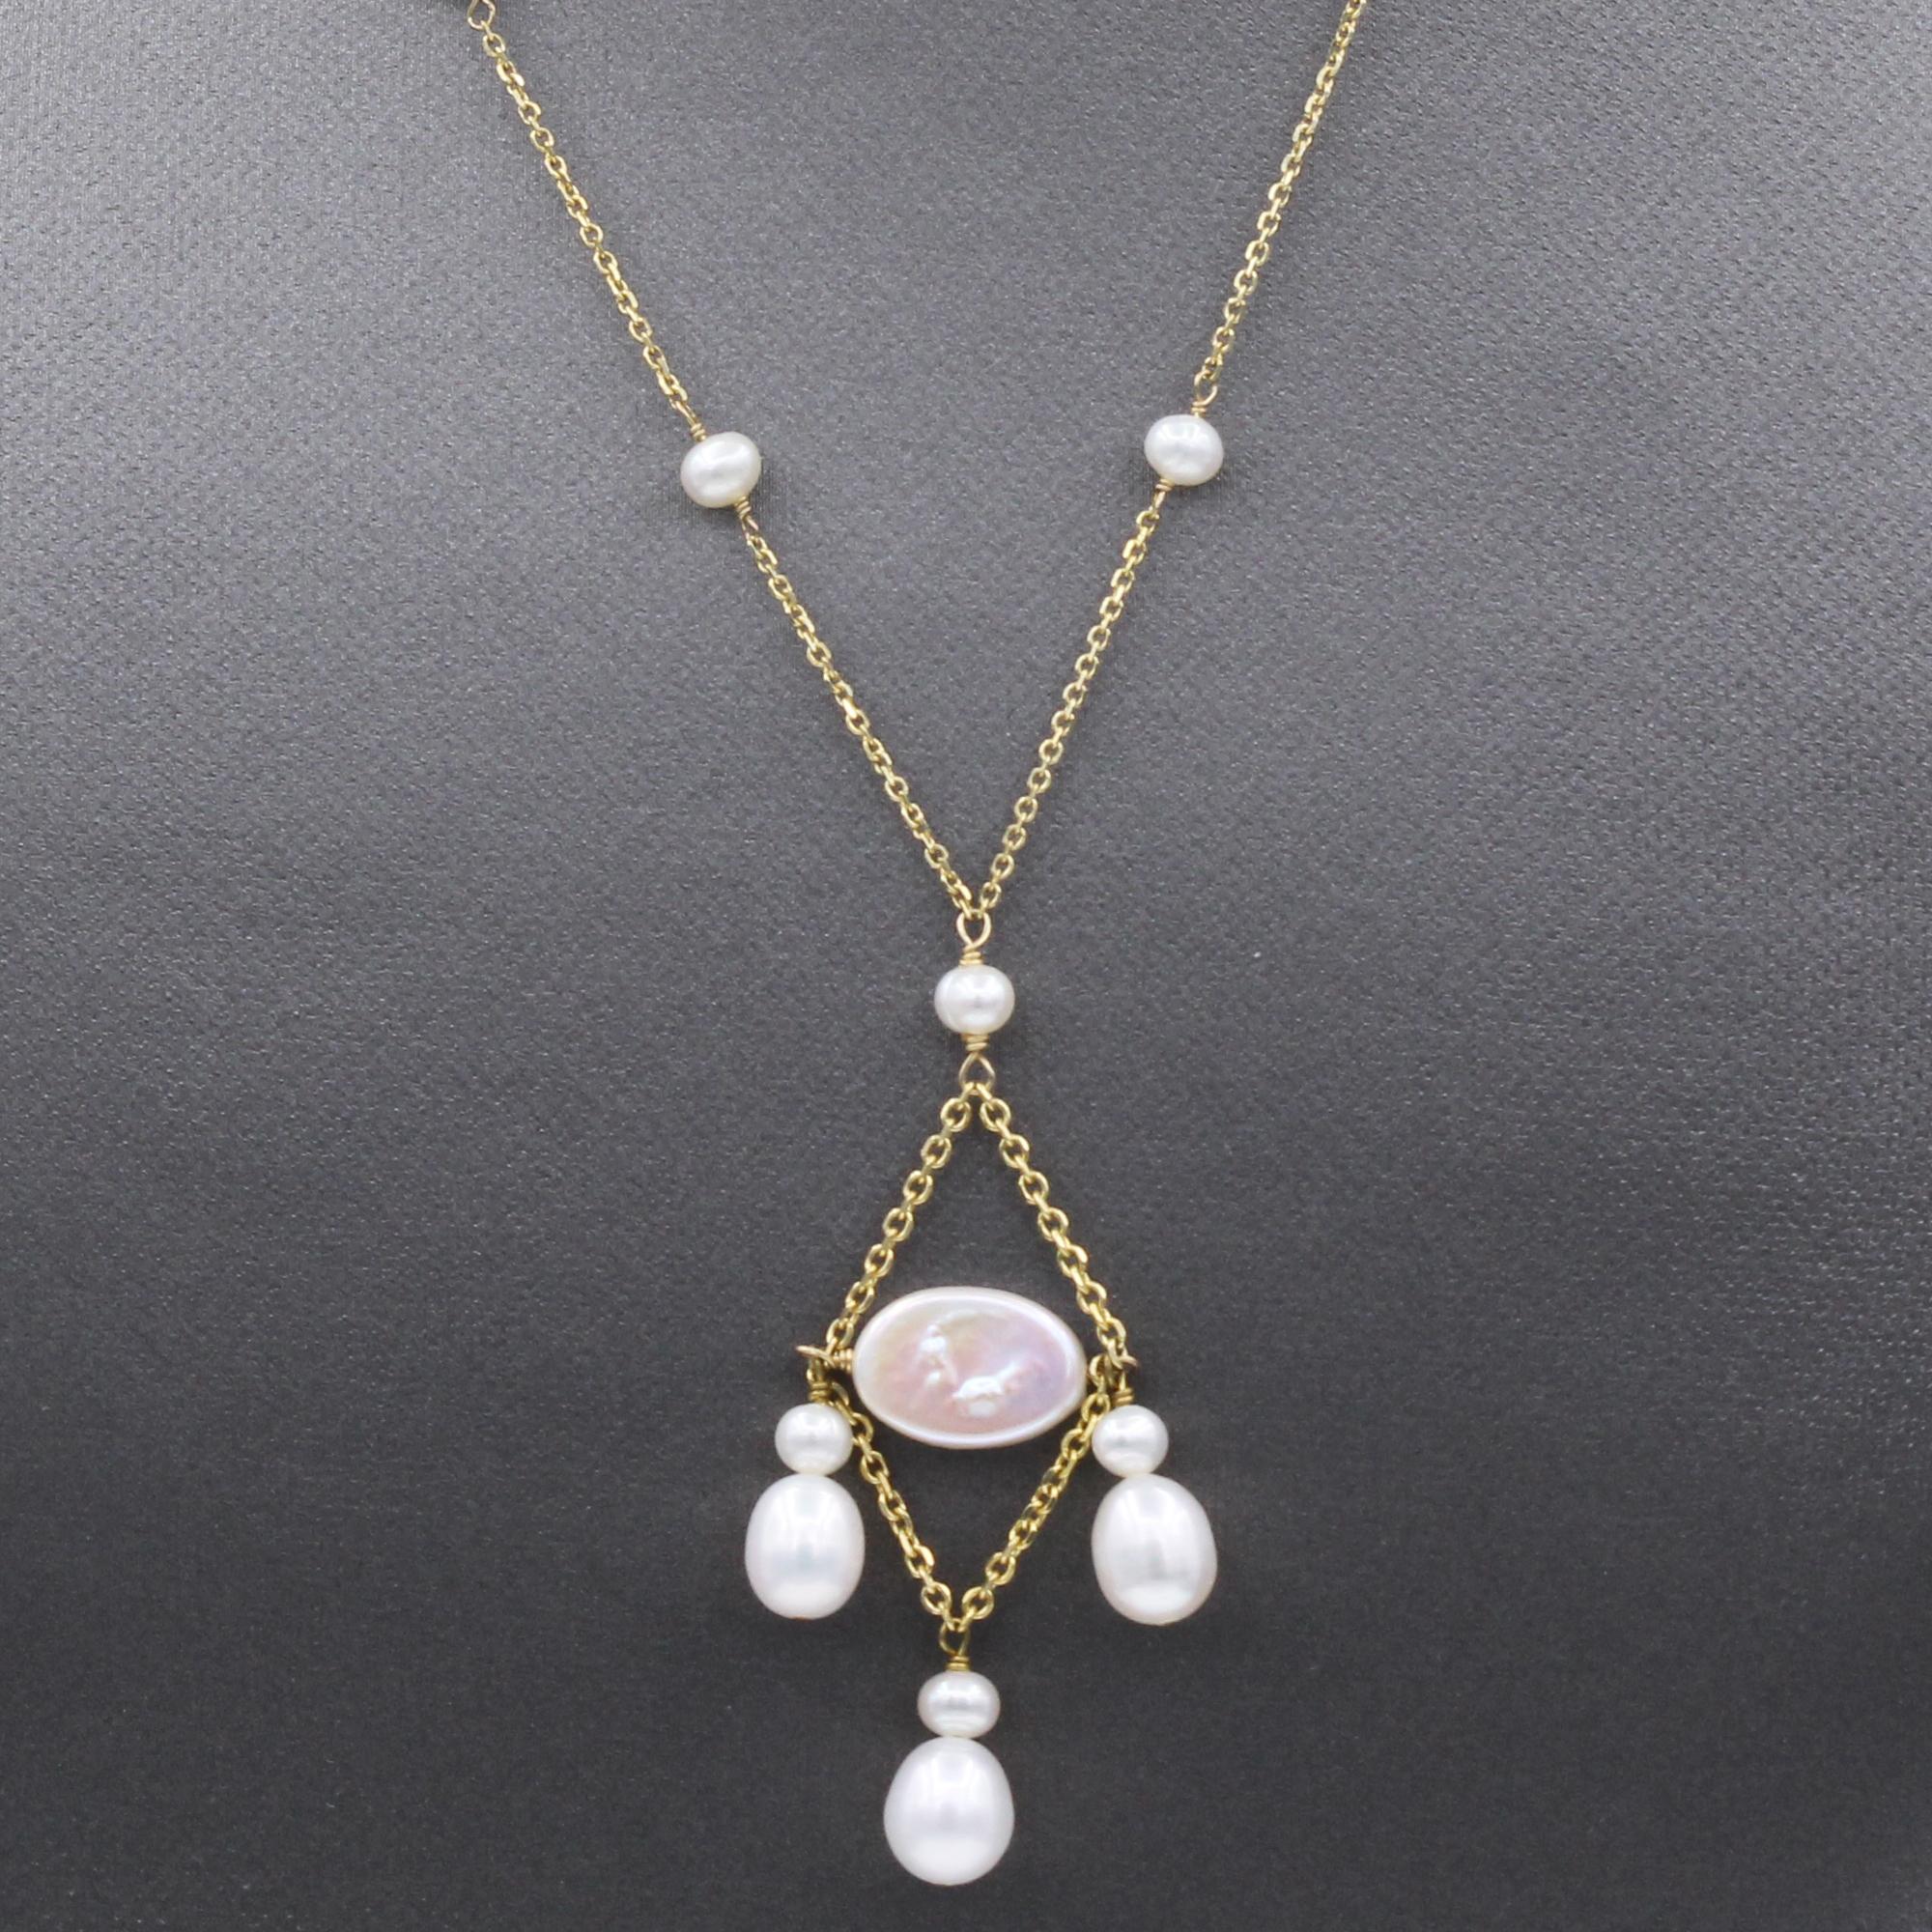 Collier de perles élégant
Style fils pendants
or jaune 14k
Petites perles d'eau douce tout autour environ.  3- 4 mm 
Perles d'eau douce pendantes, environ 8 mm
Longueur du collier  16.5' Inch
Longueur de la pampille : environ 2 pouces
Bague de